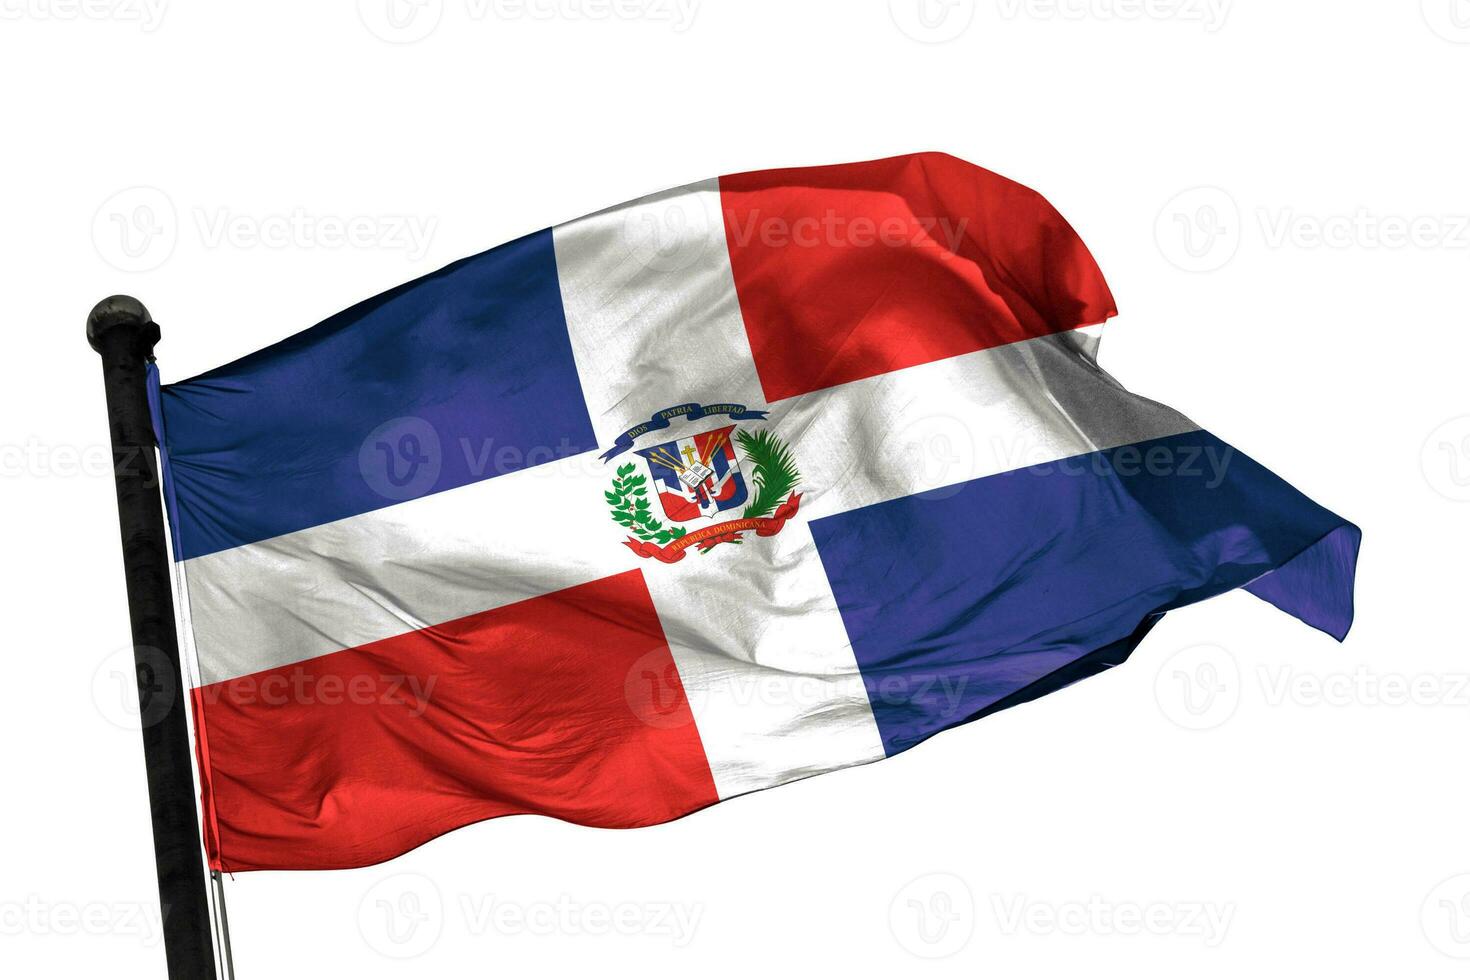 Dominikanska republiken flagga på en vit bakgrund. - bild. foto